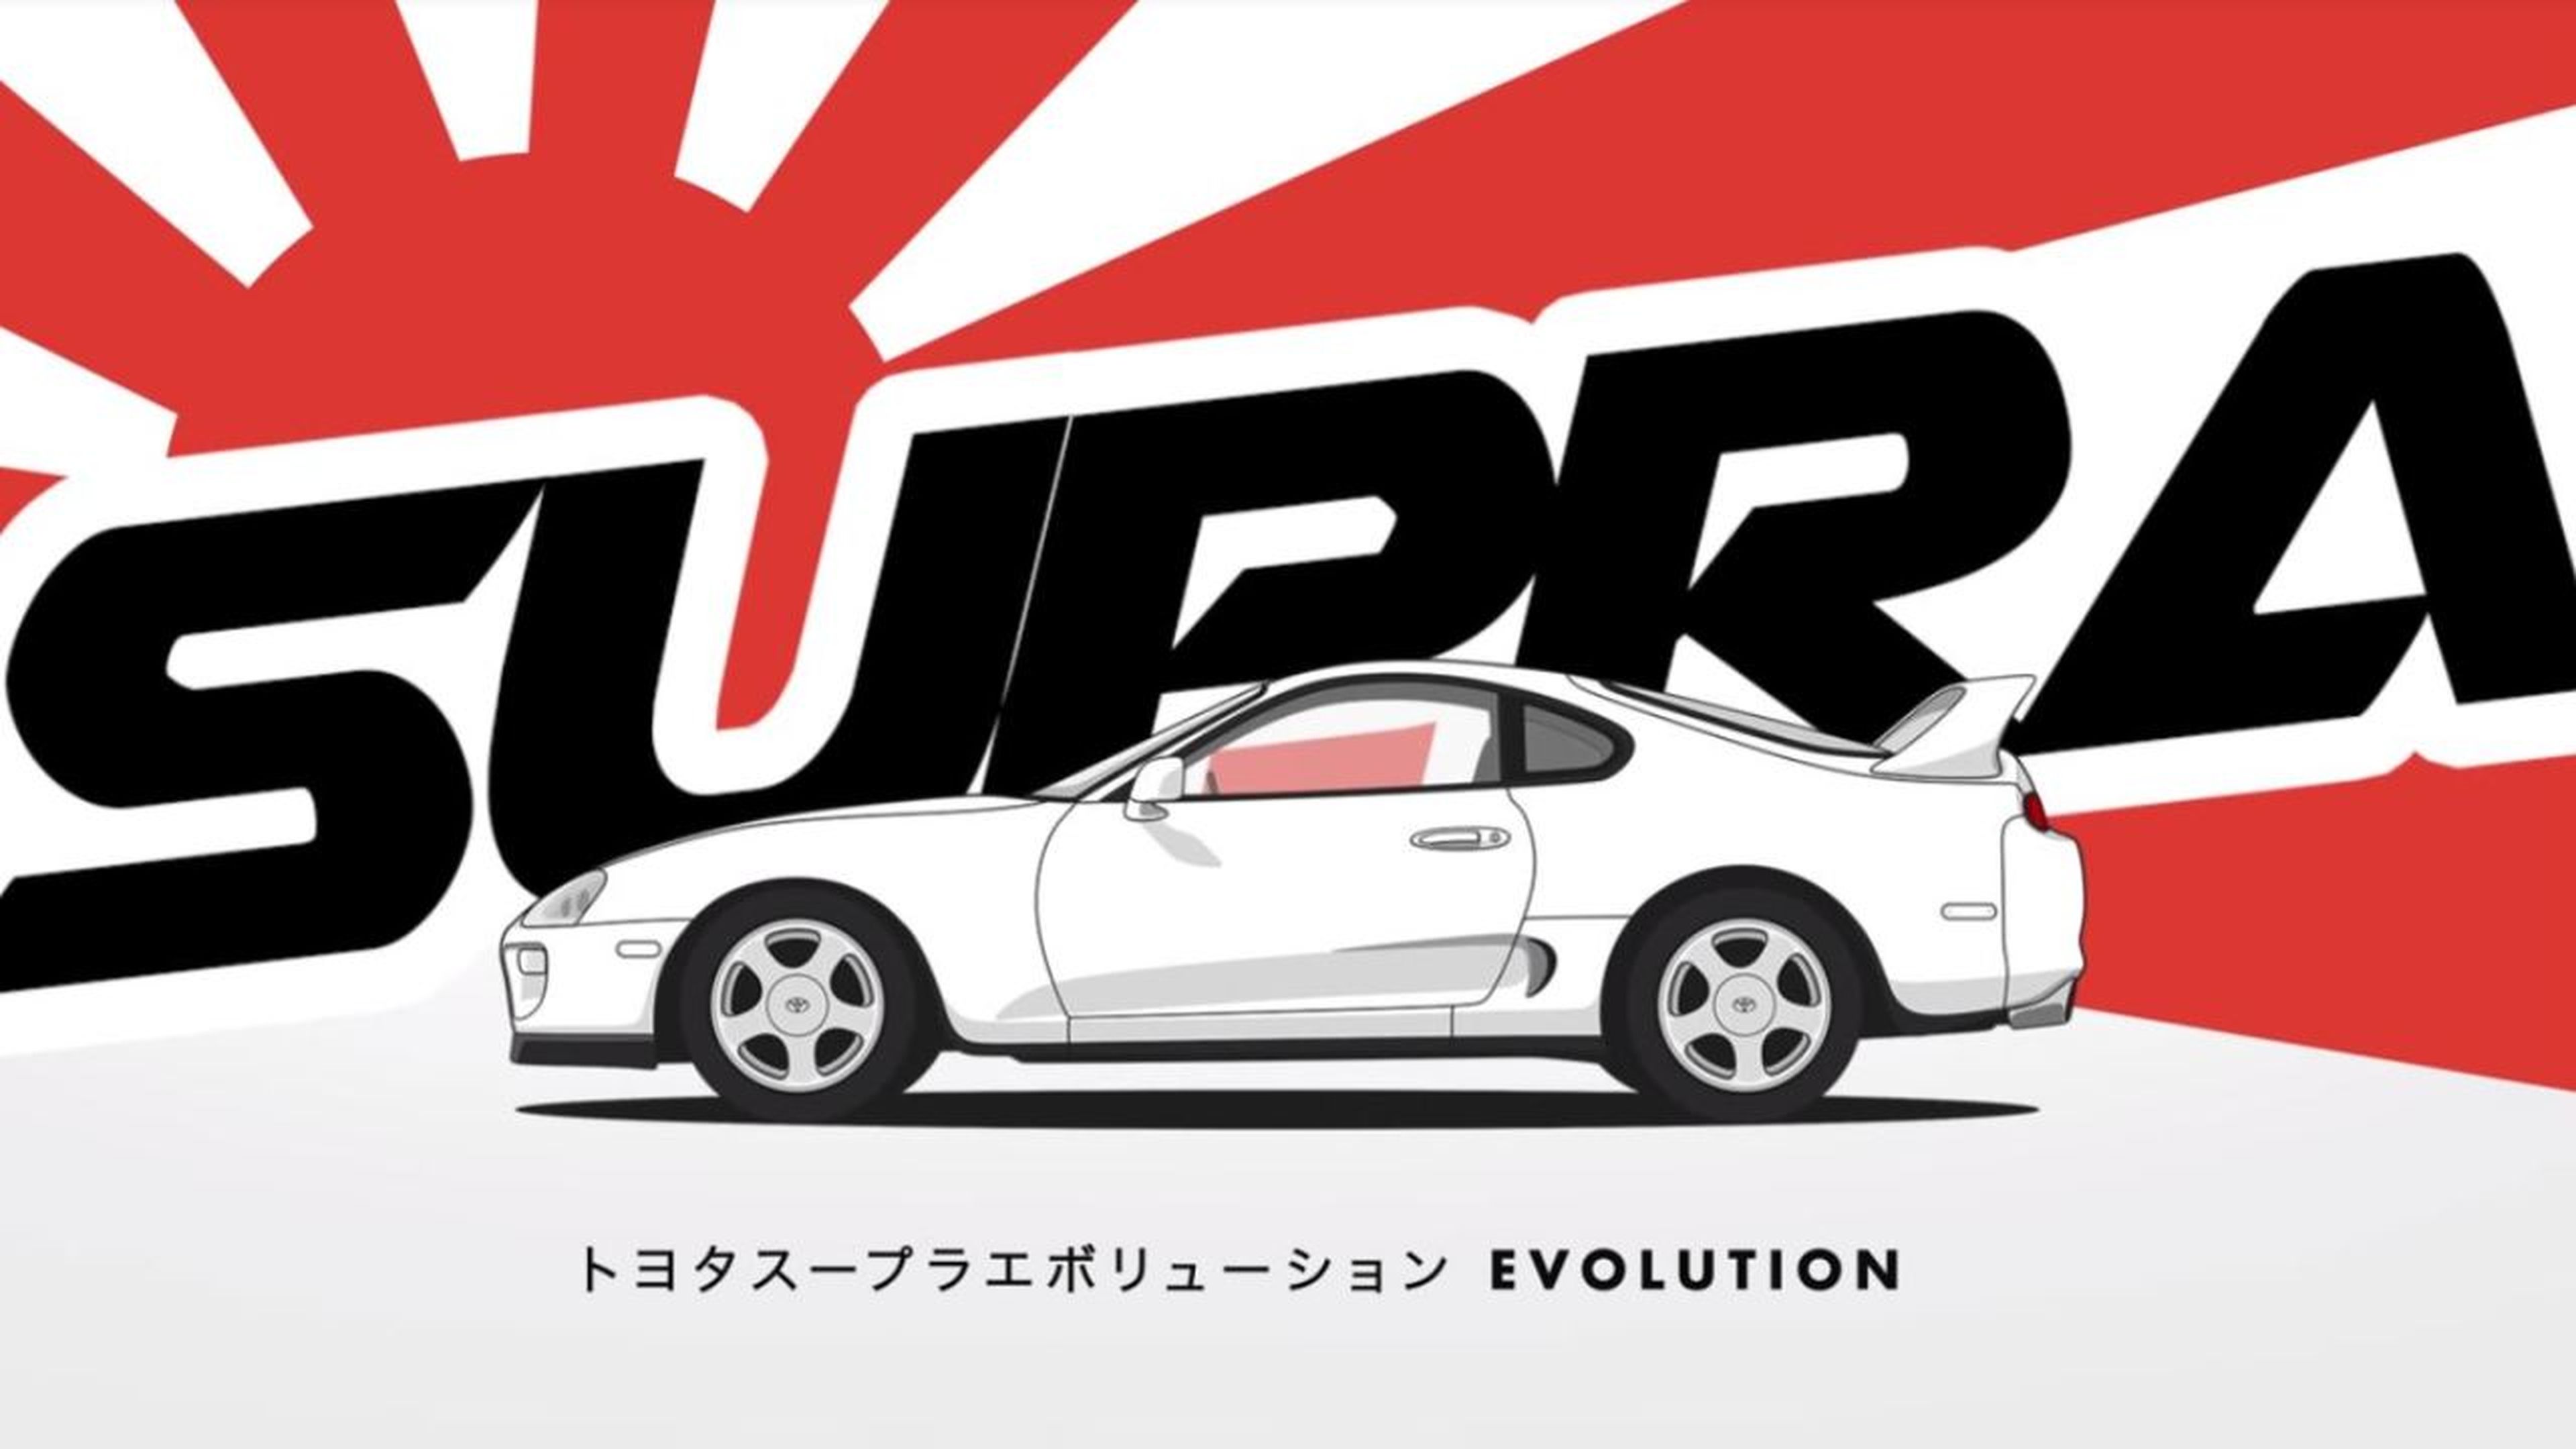 Evolución Toyota Supra